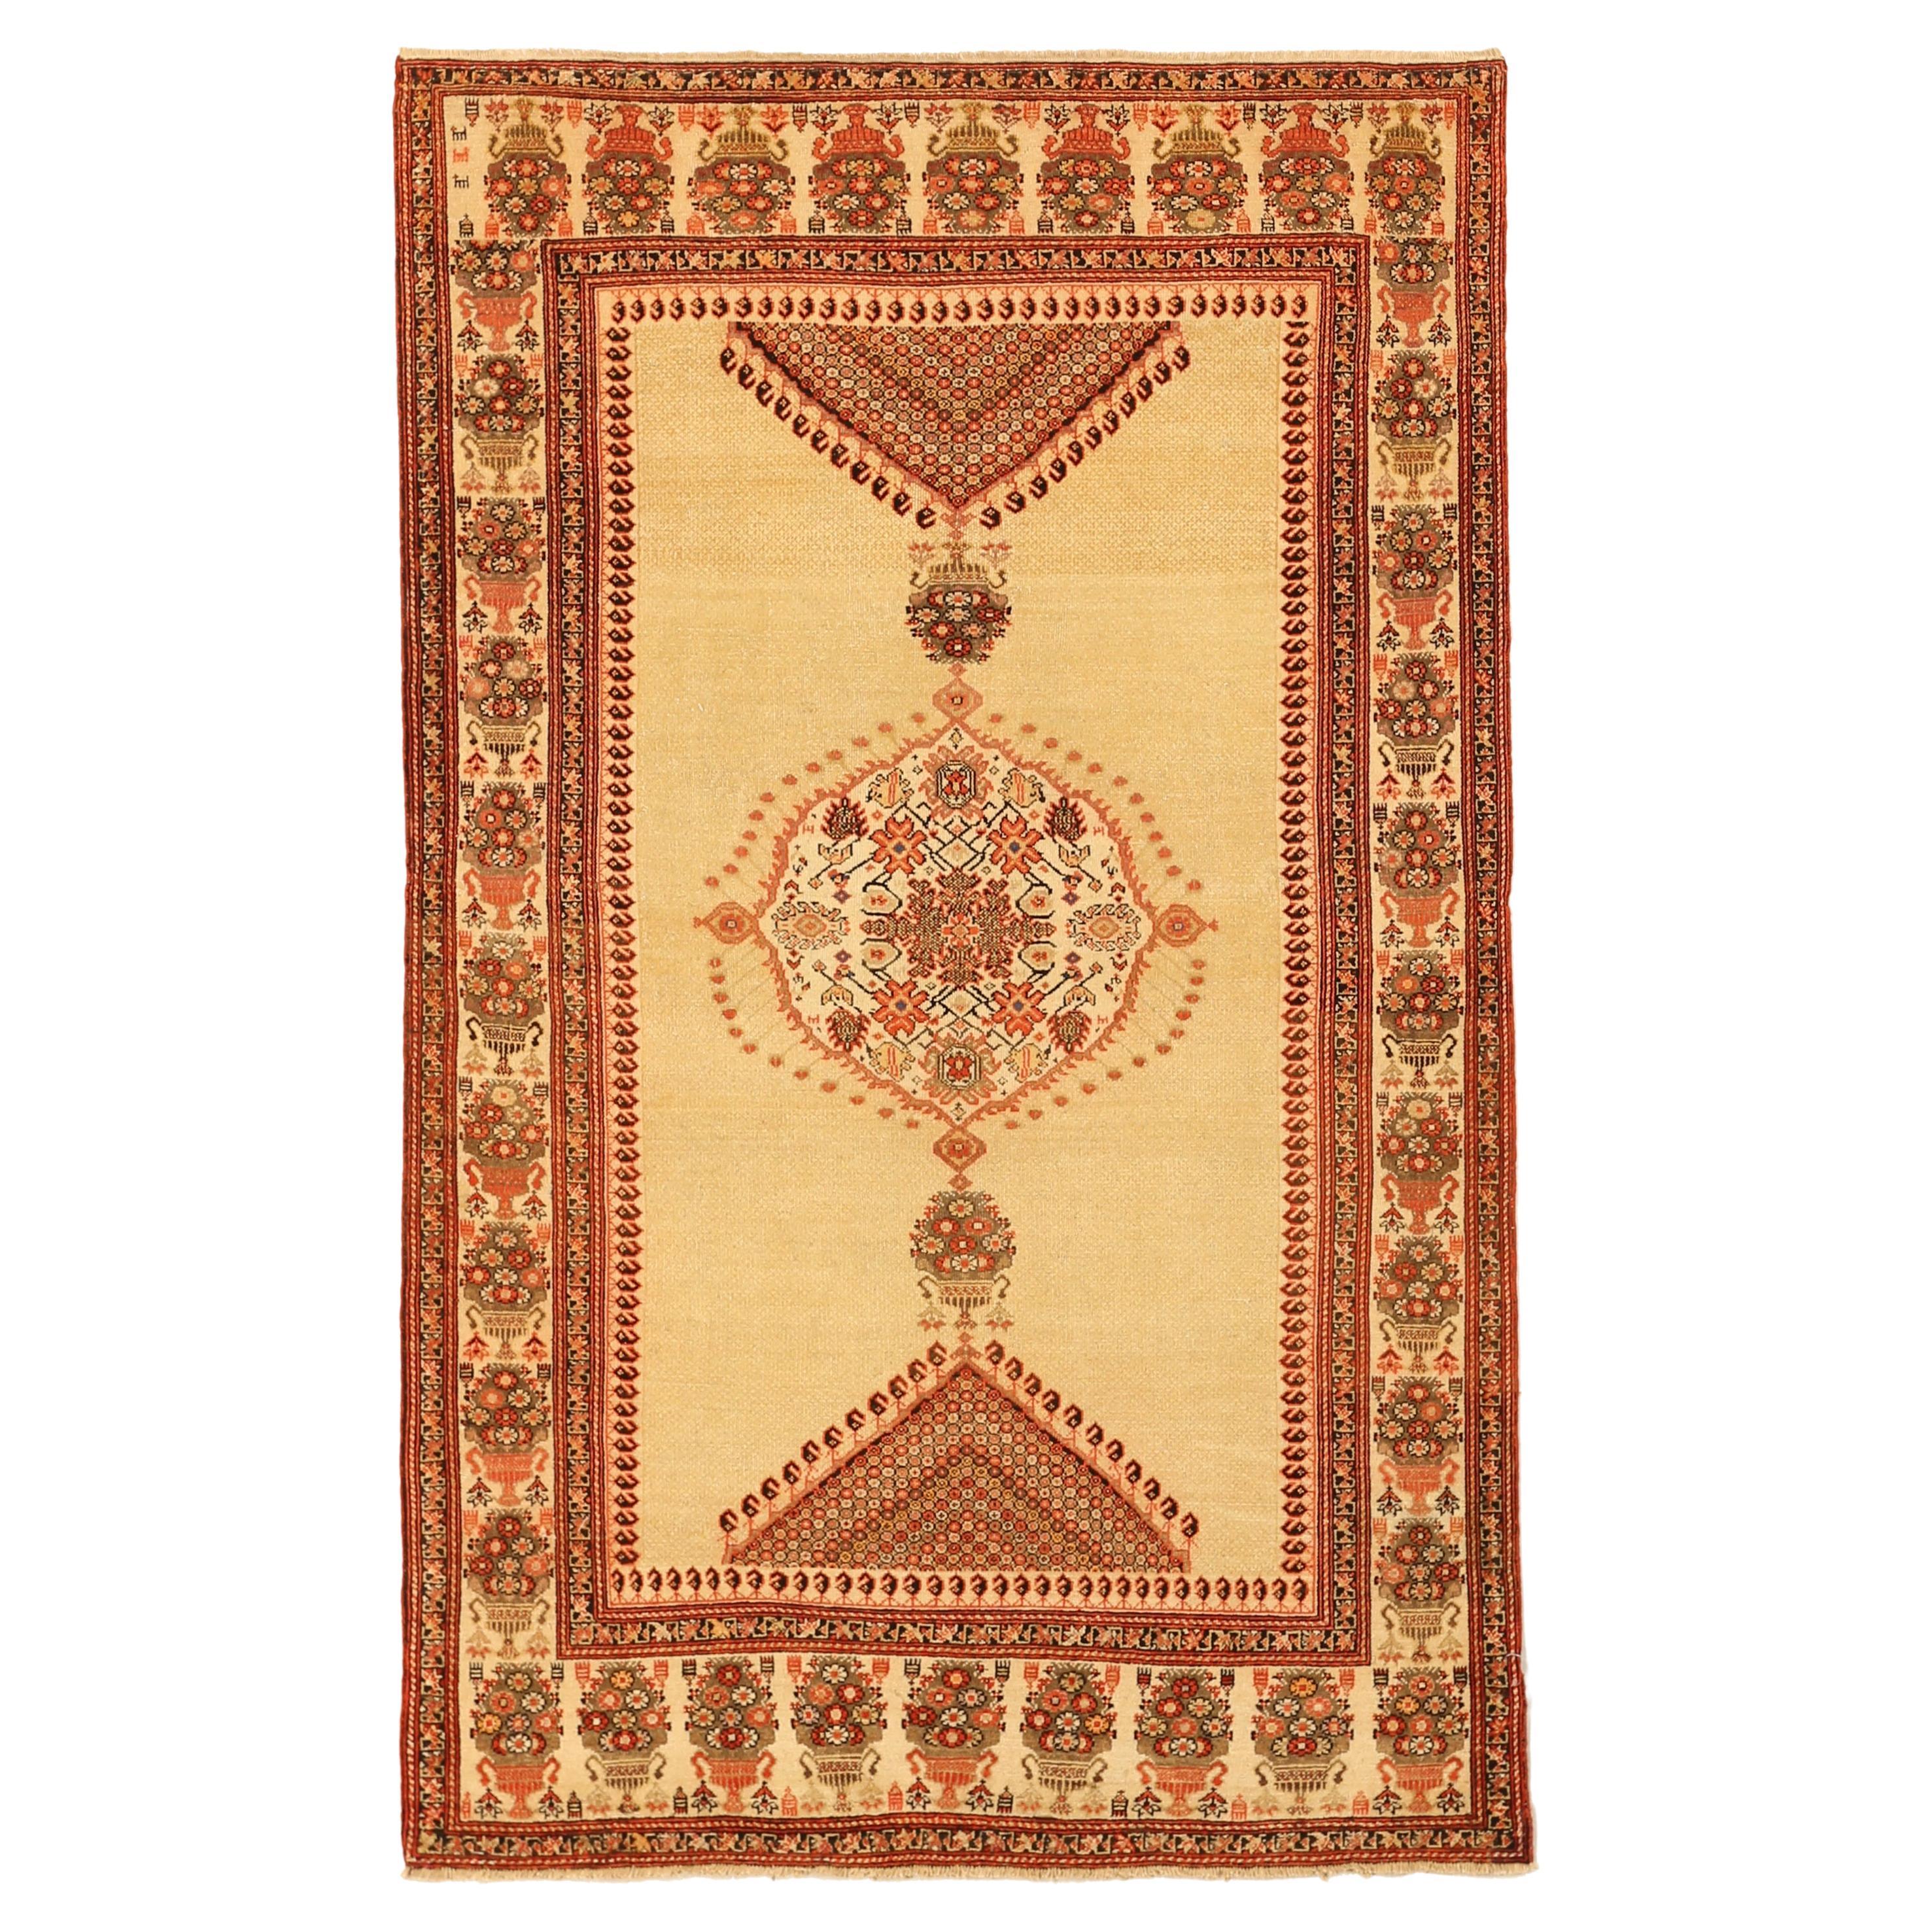 Antiker handgewebter persischer Teppich in Malayer-Design